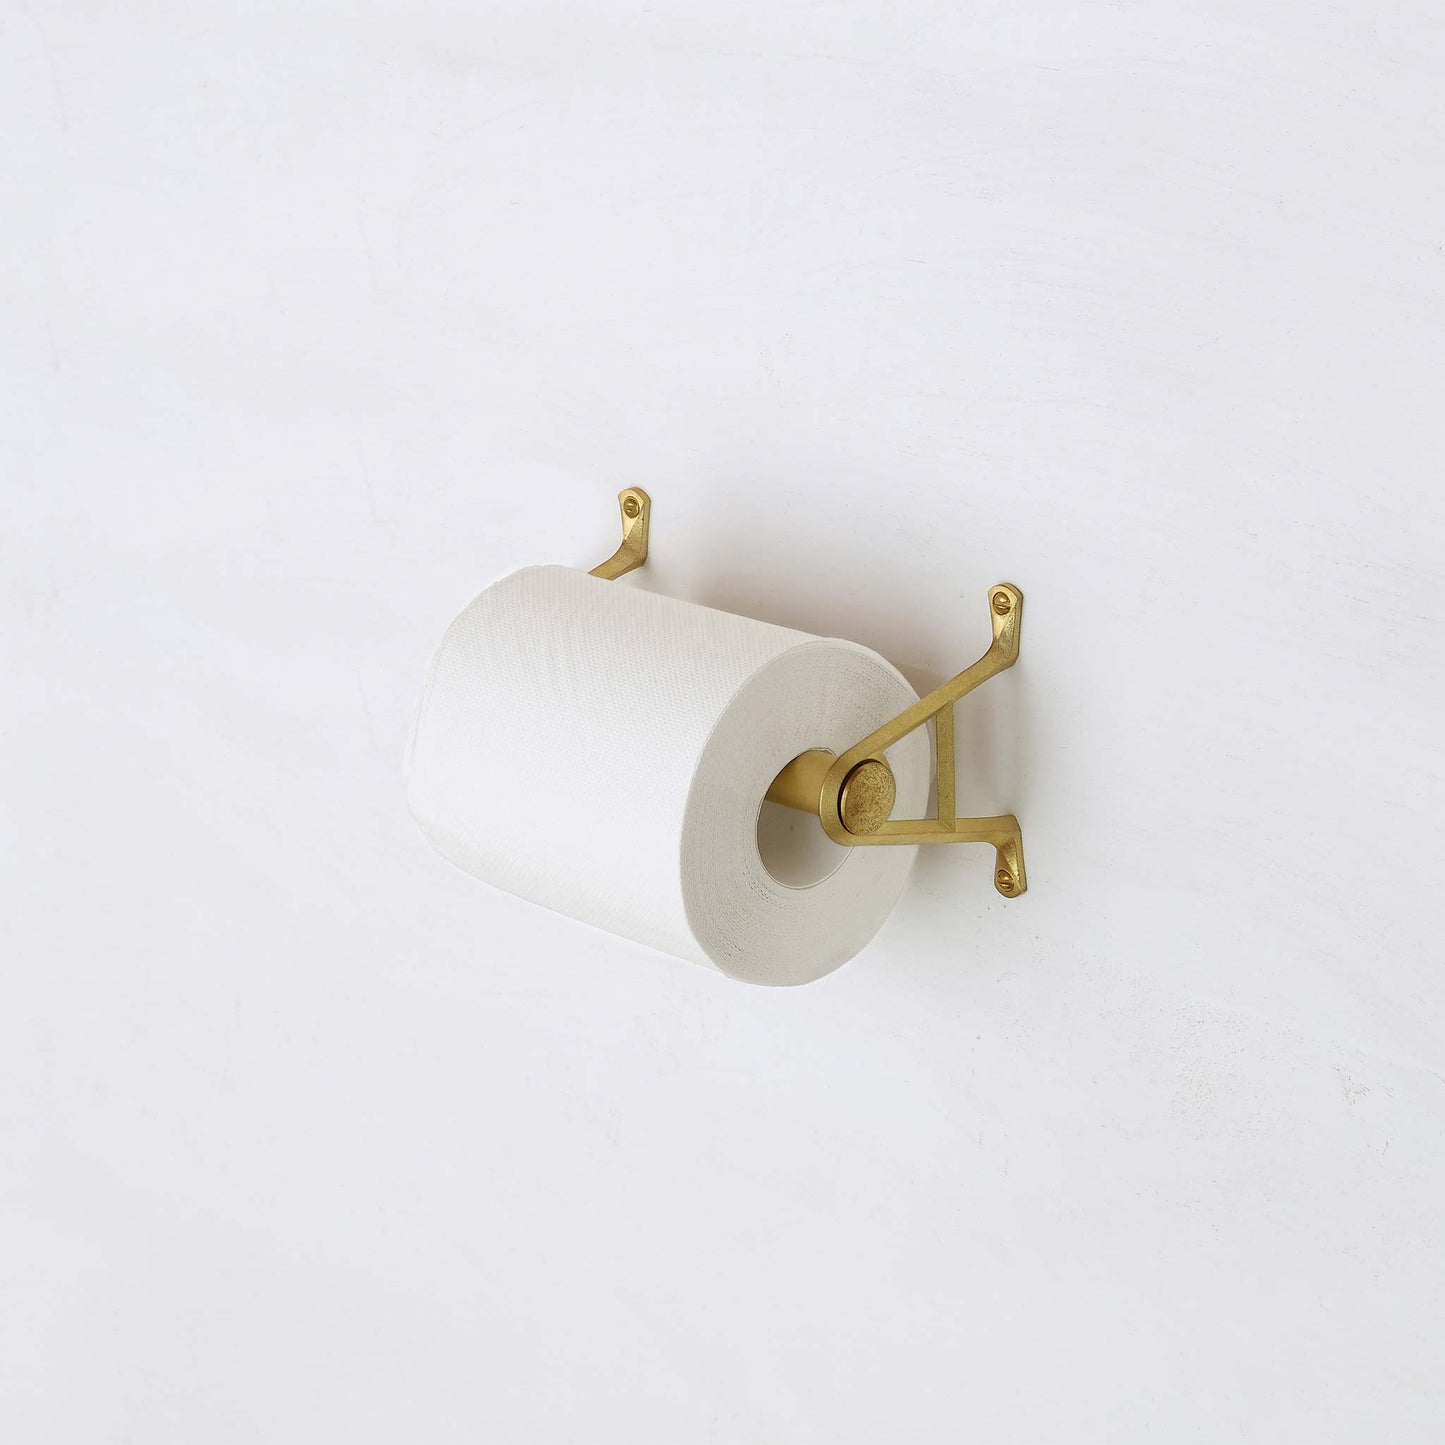 Brass Toilet Paper Holder